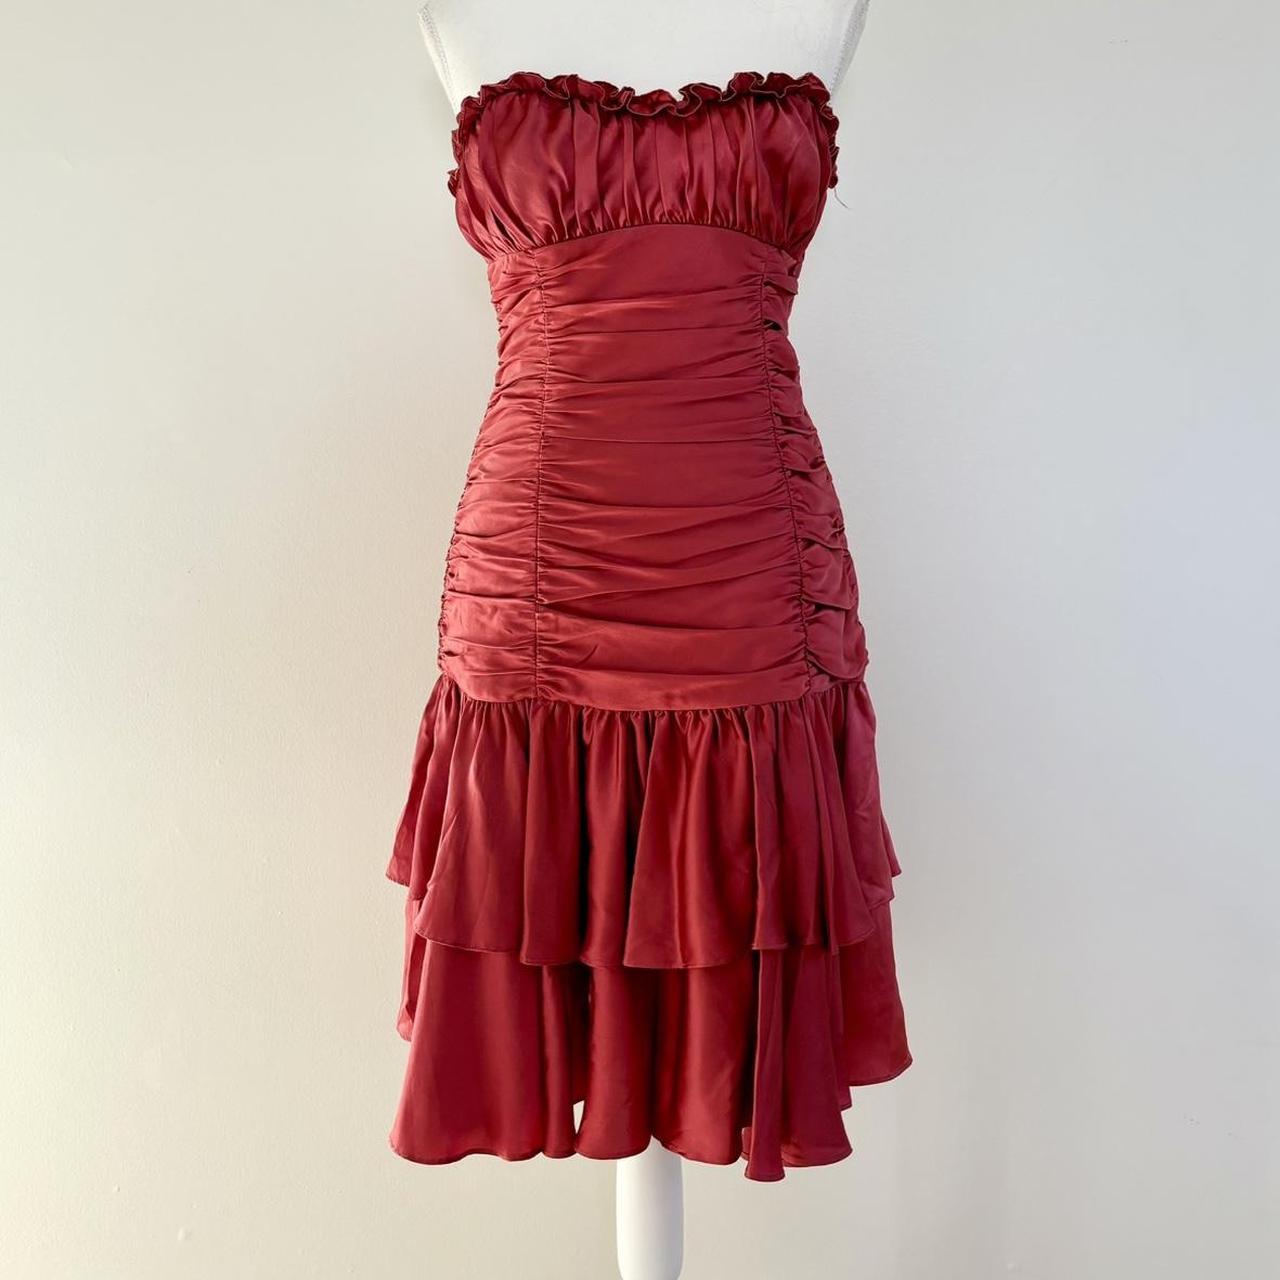 Strapless dress Vintage drop waist vintage Betsey... - Depop